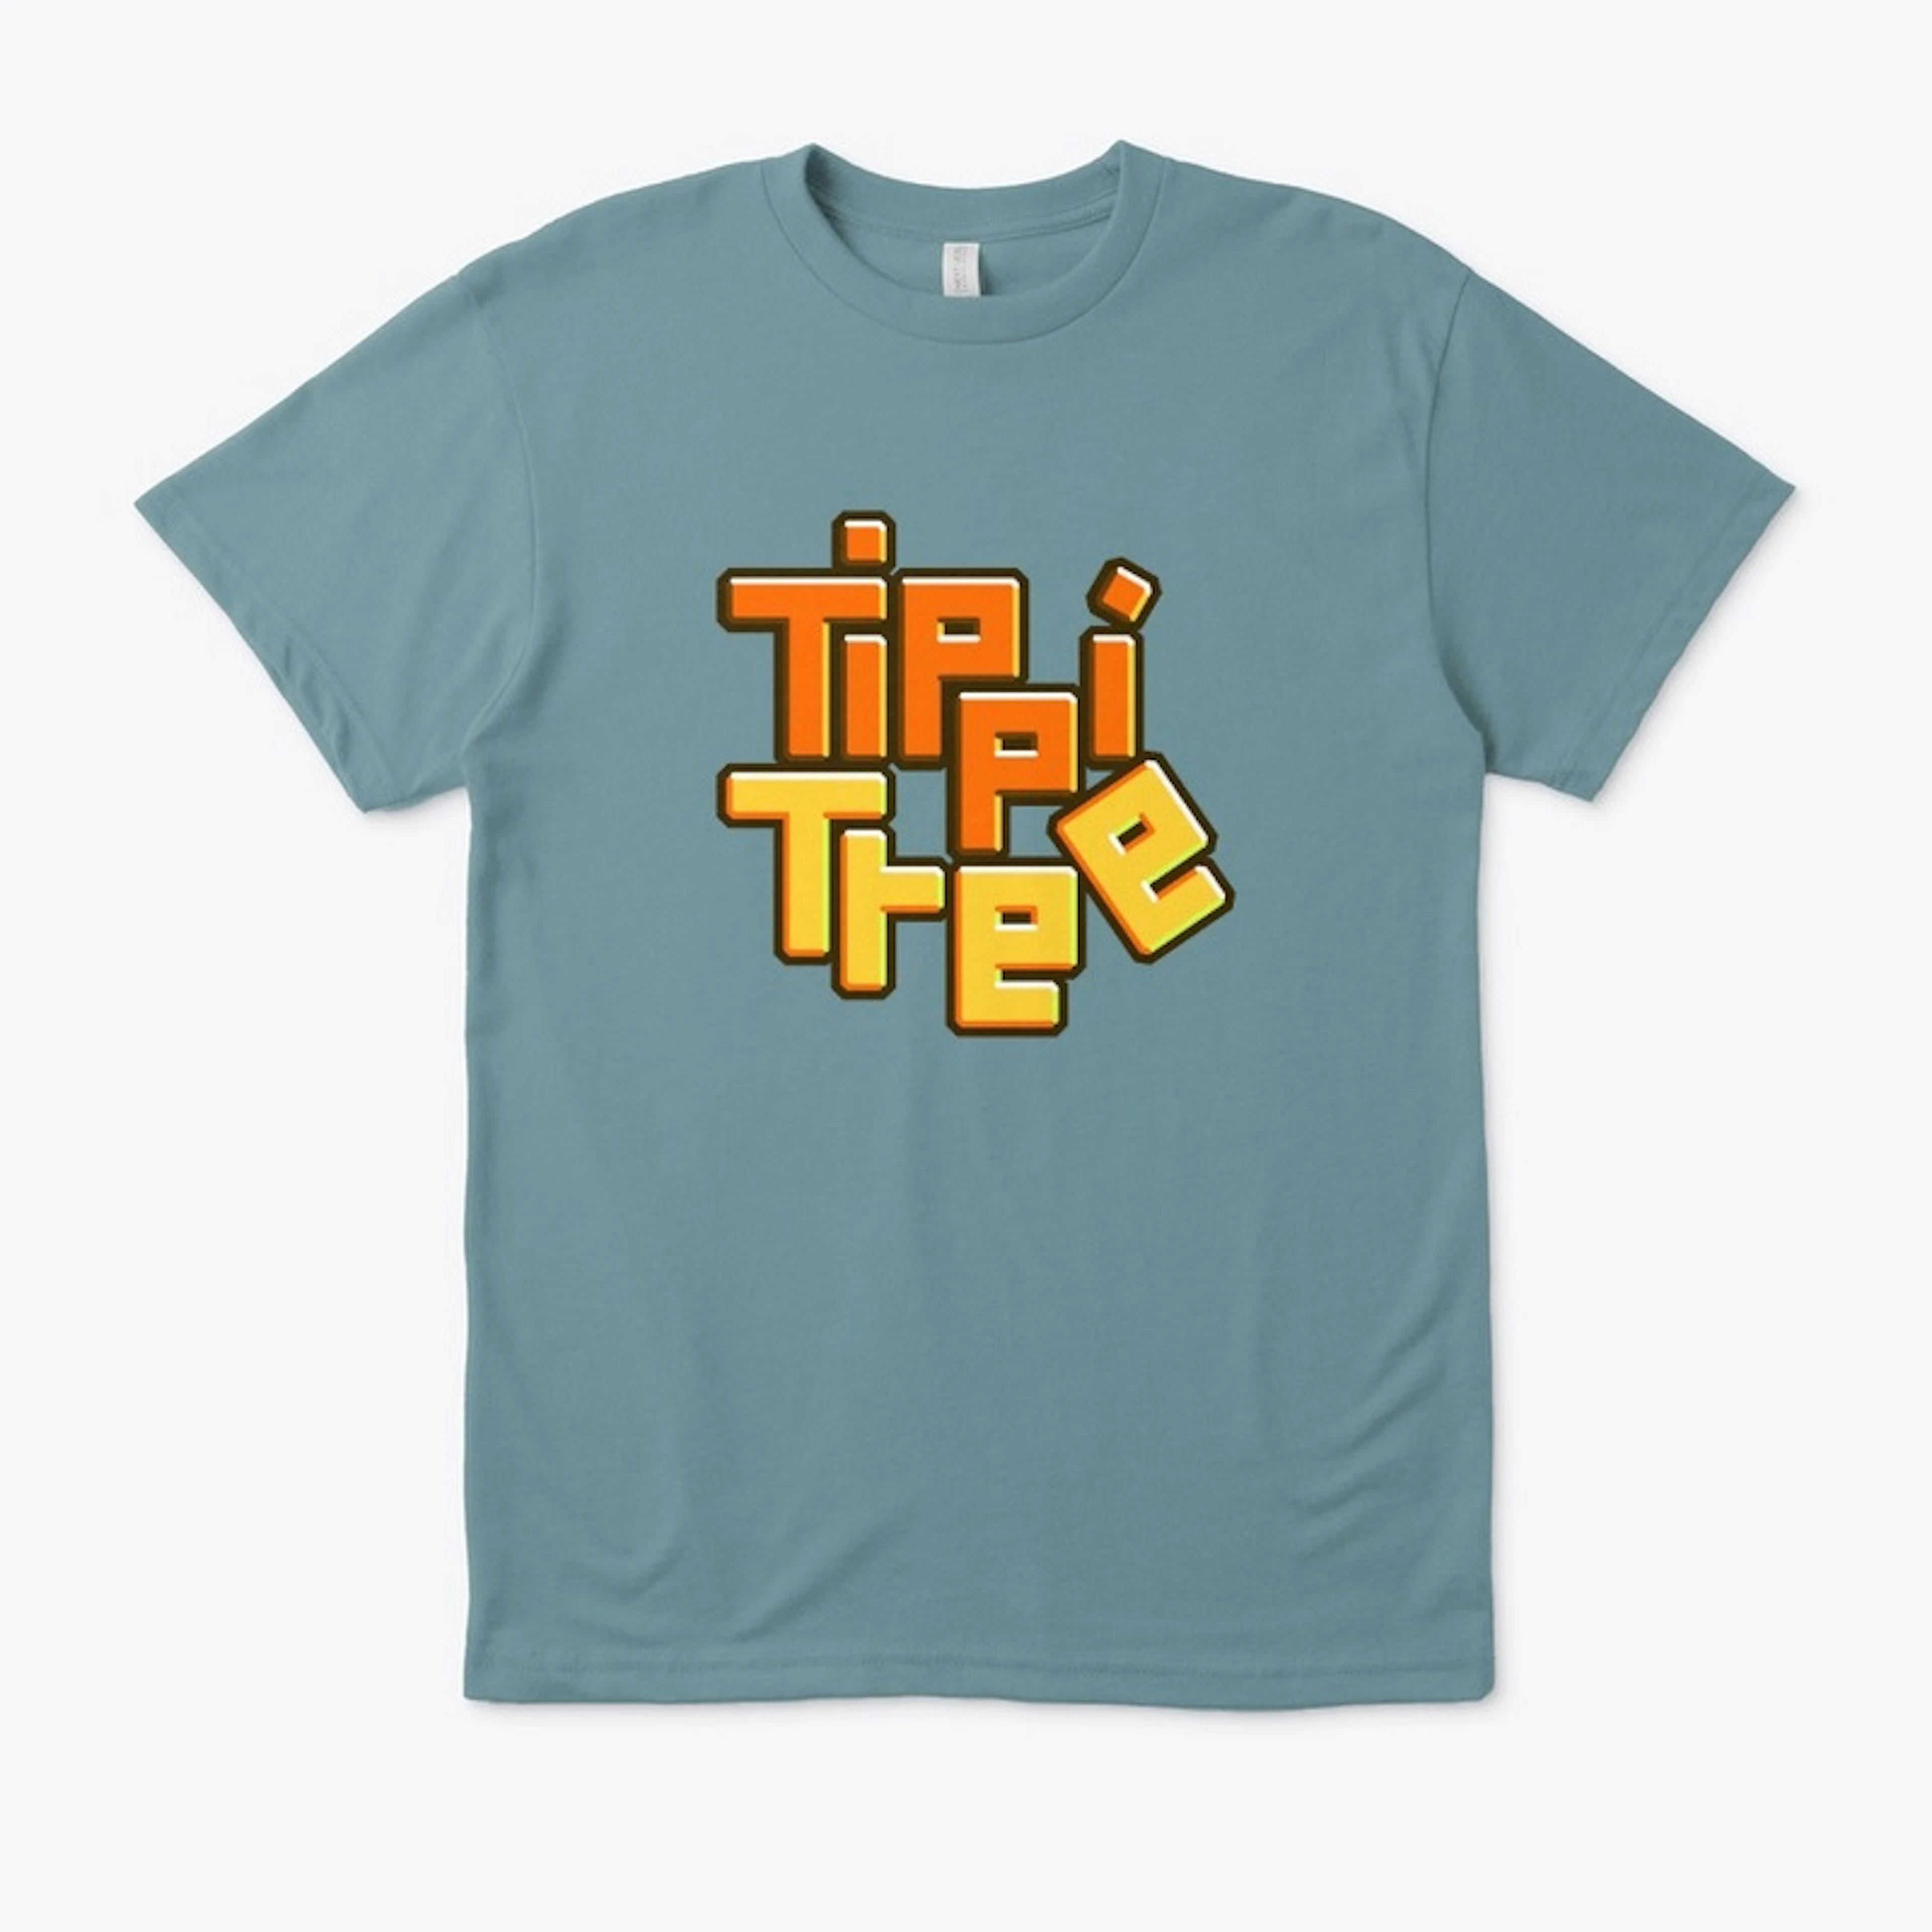 Tippi Tree Tee